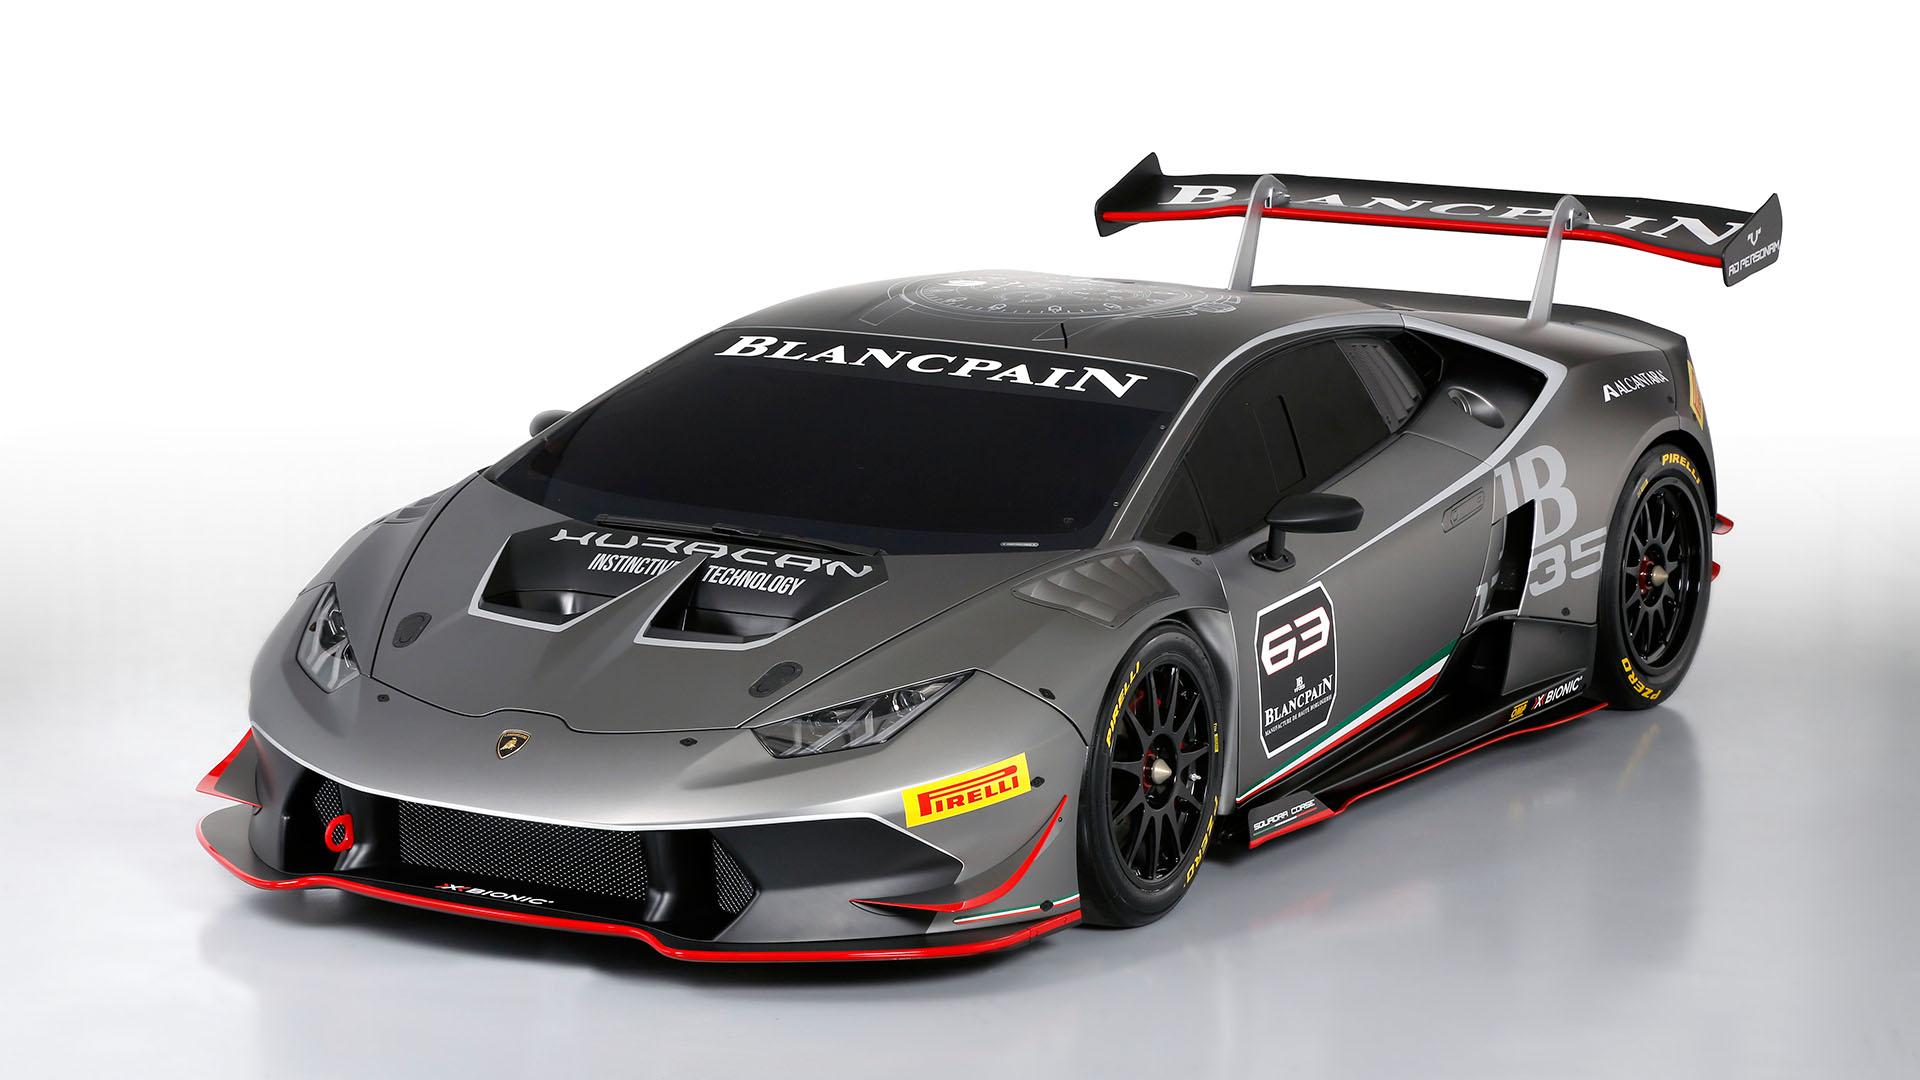 The 2015 Lamborghini Huracán Super Trofeo race car